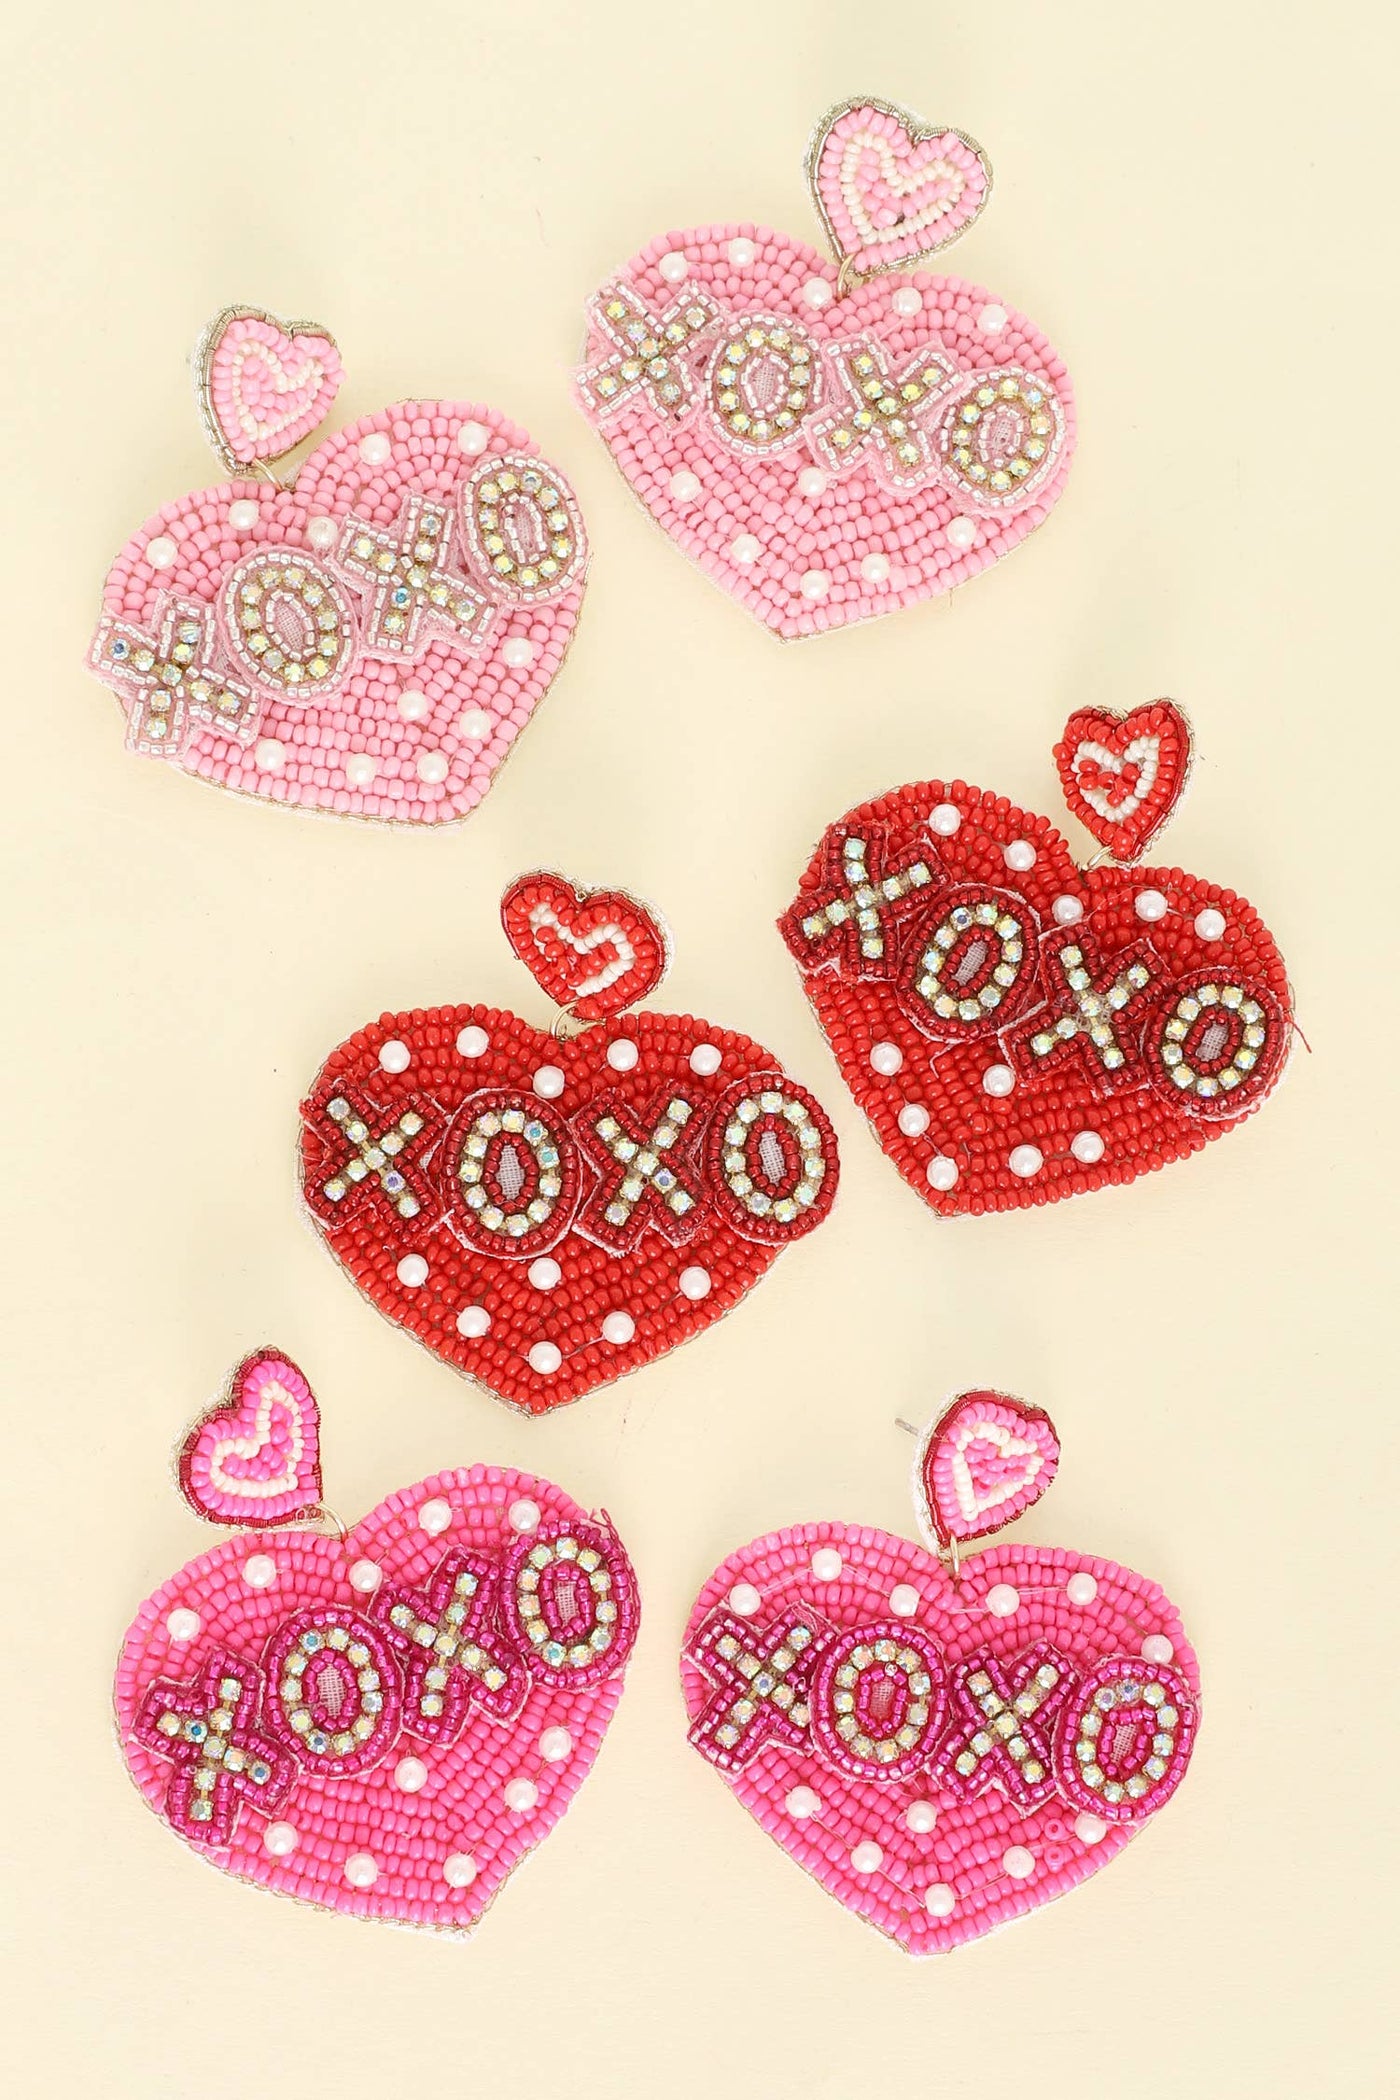 XOXO Heart Shaped Valentine Beaded Earrings